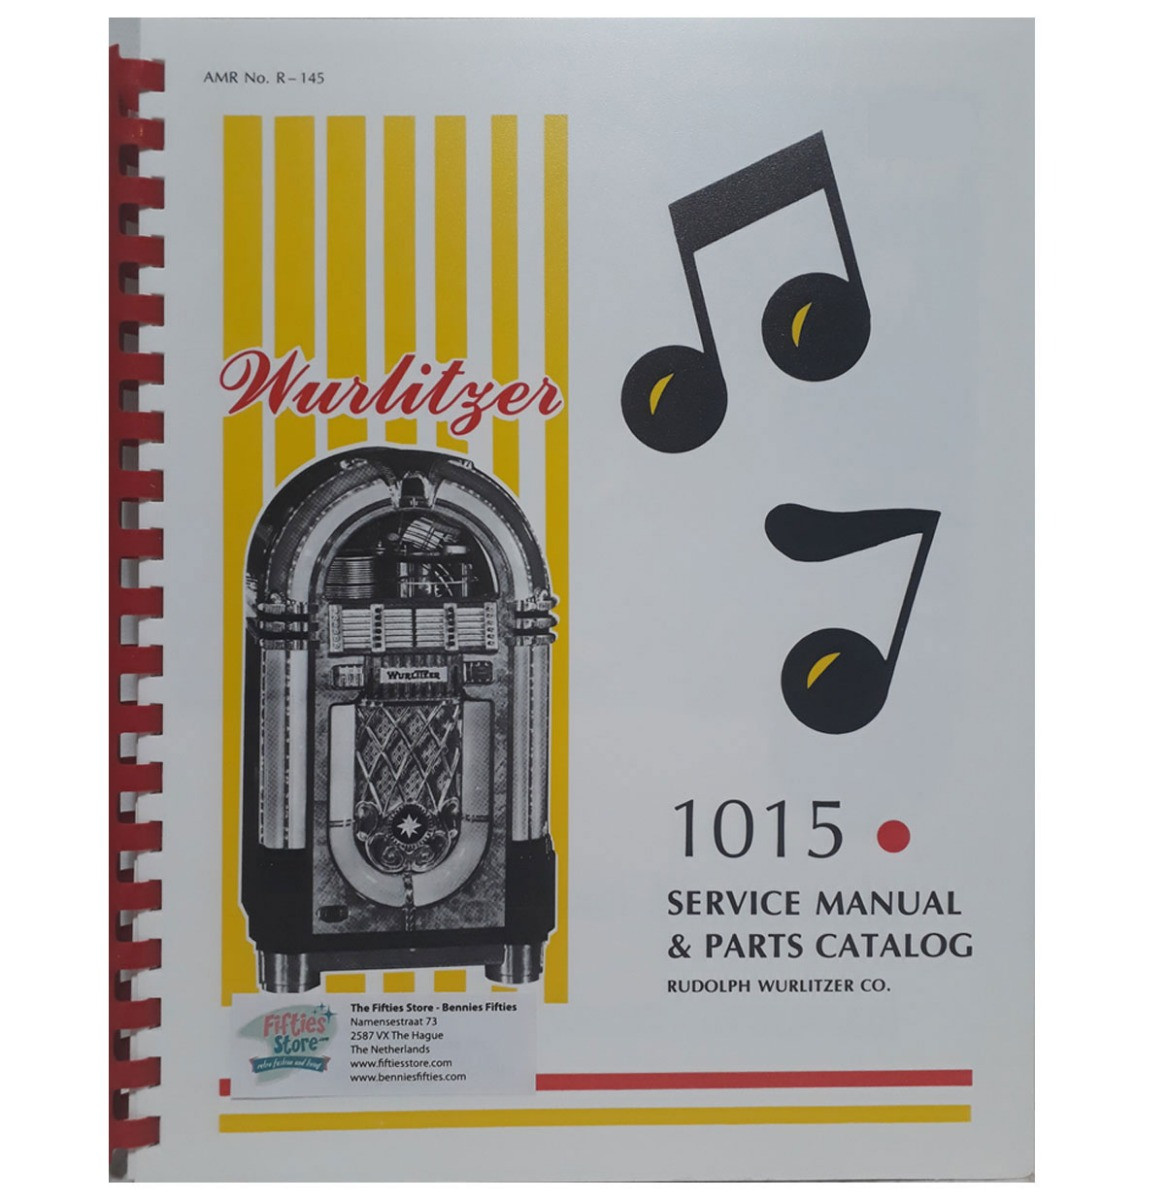 Wurlitzer 1015 Service Manual & Parts Catalog